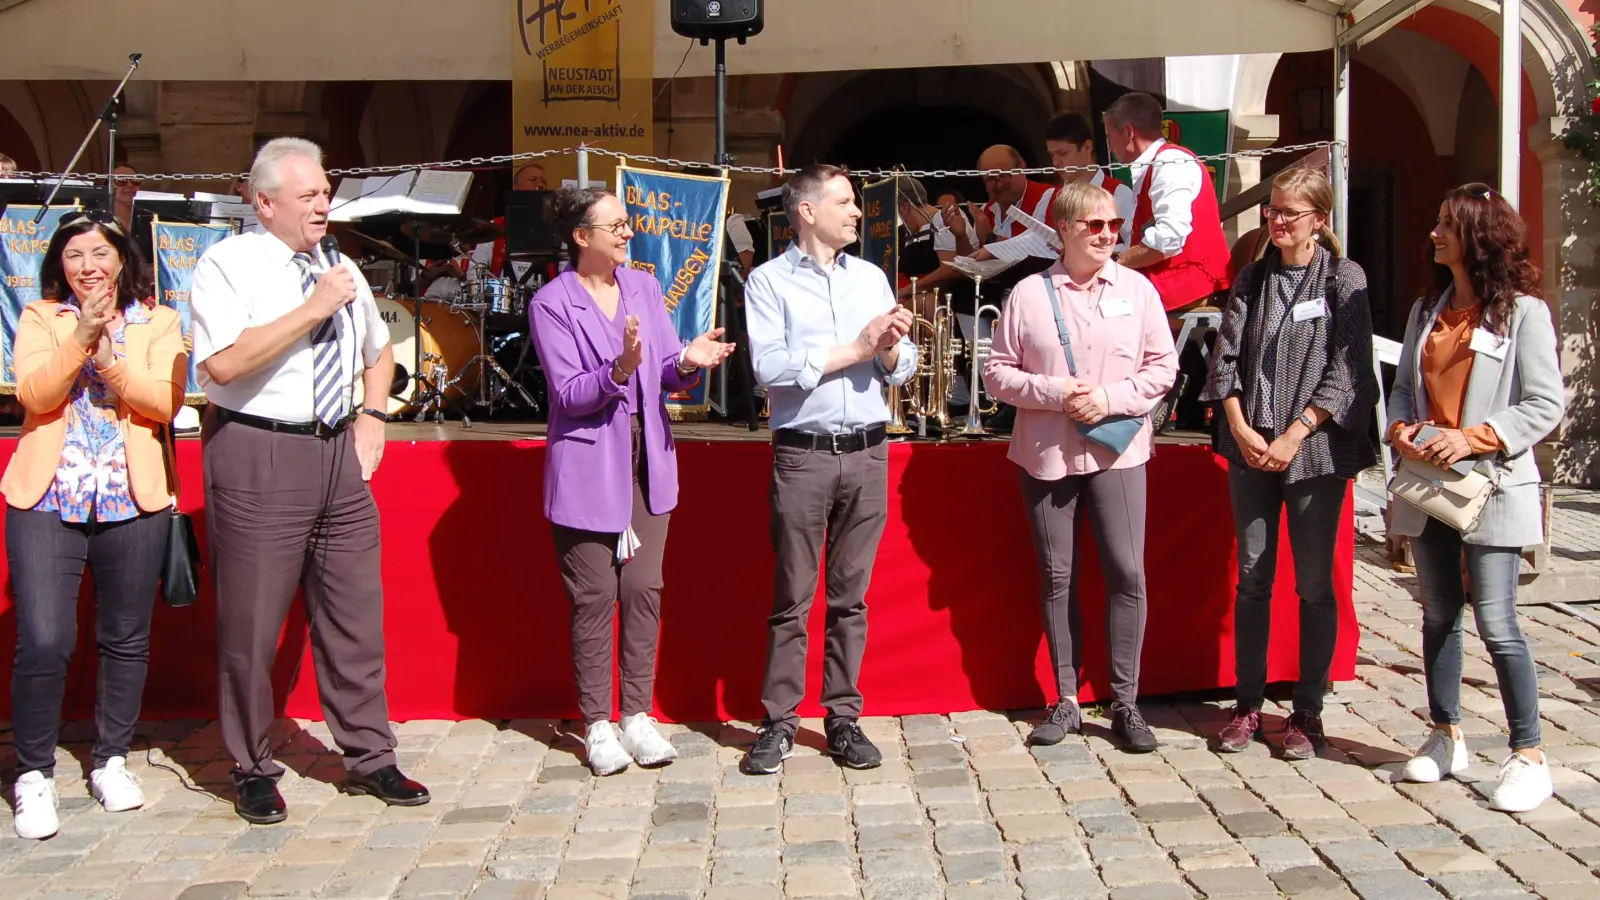 Das Herbstfest in Neustadt wurde von Bürgermeister Klaus Meier (Zweiter von links) bei bestem Wetter offiziell eröffnet. (Foto: Christa Frühwald)